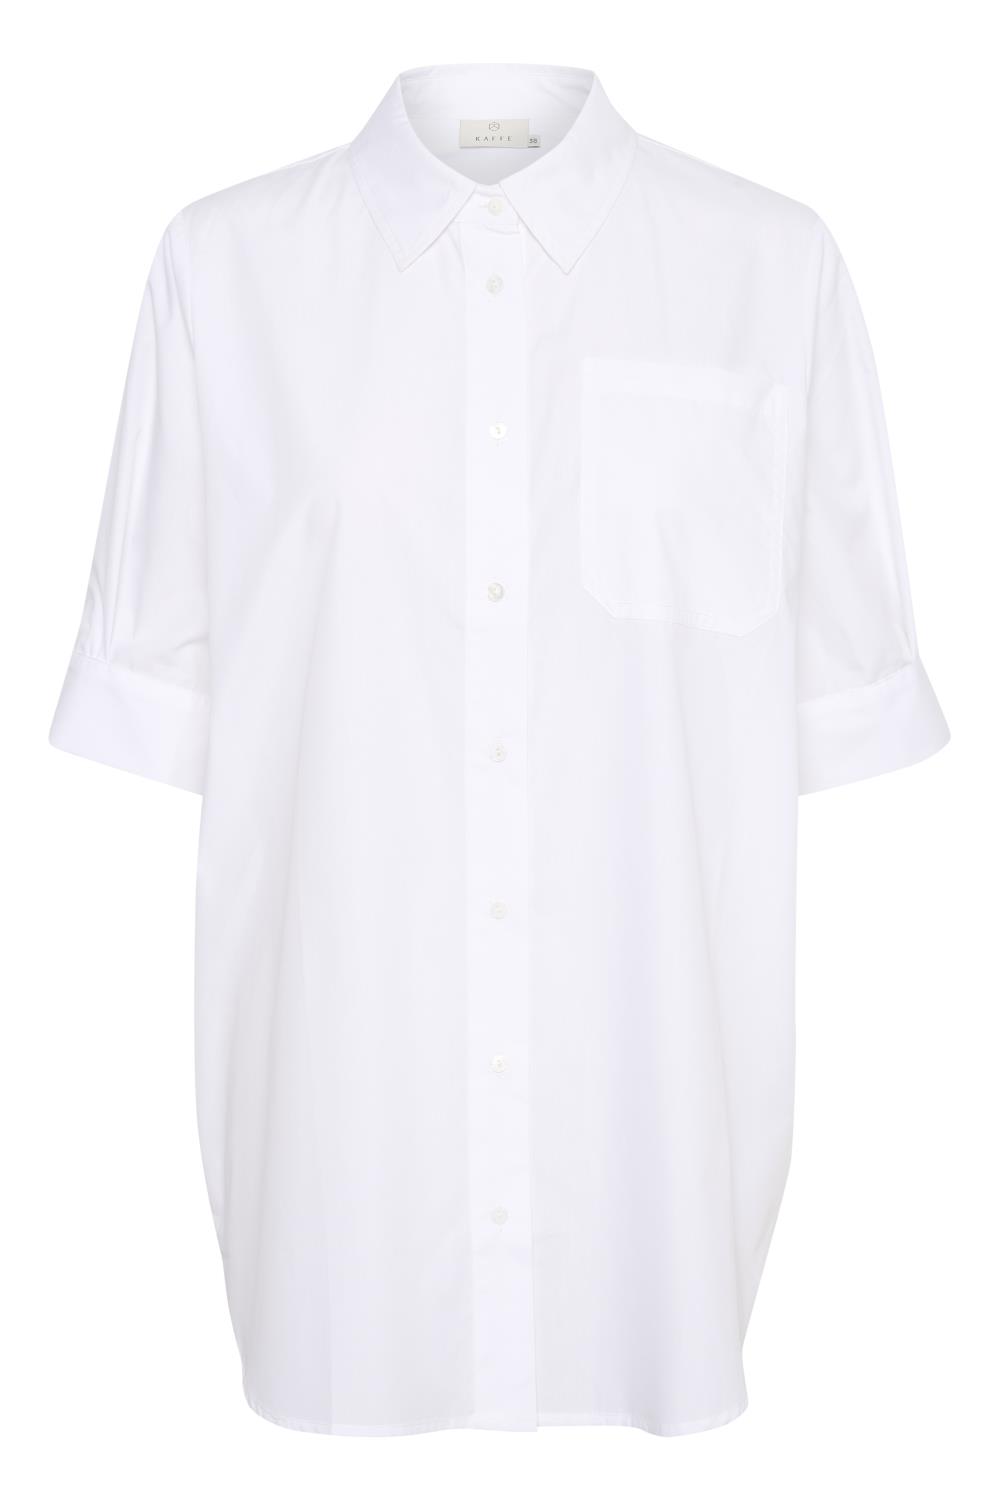 Kaffe Karin Lolly Skirt, hvit halvlang skjorte